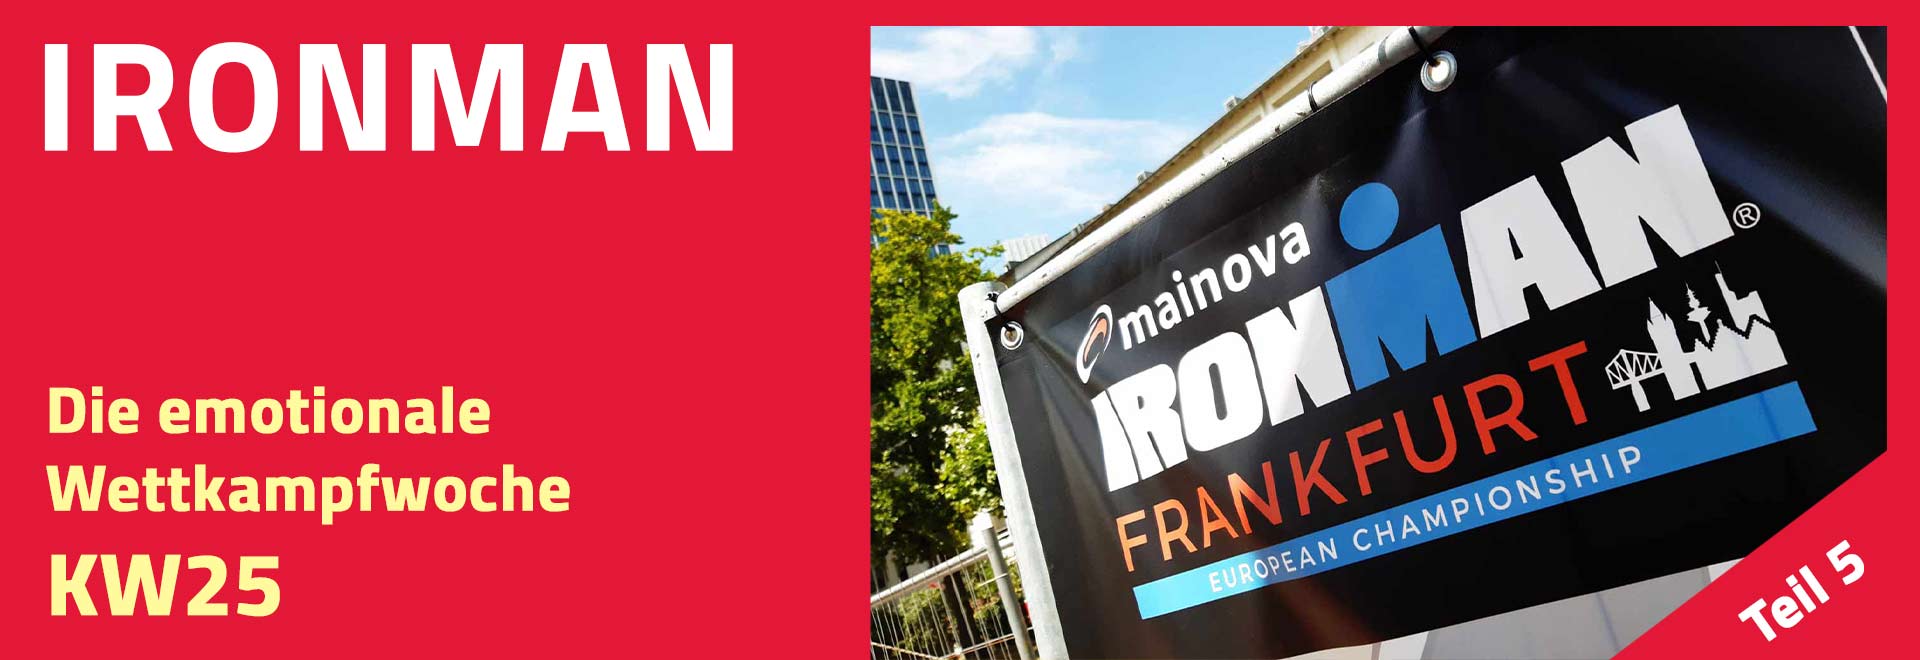 Ironman-Woche: Da ist sie, die emotionale KW25 